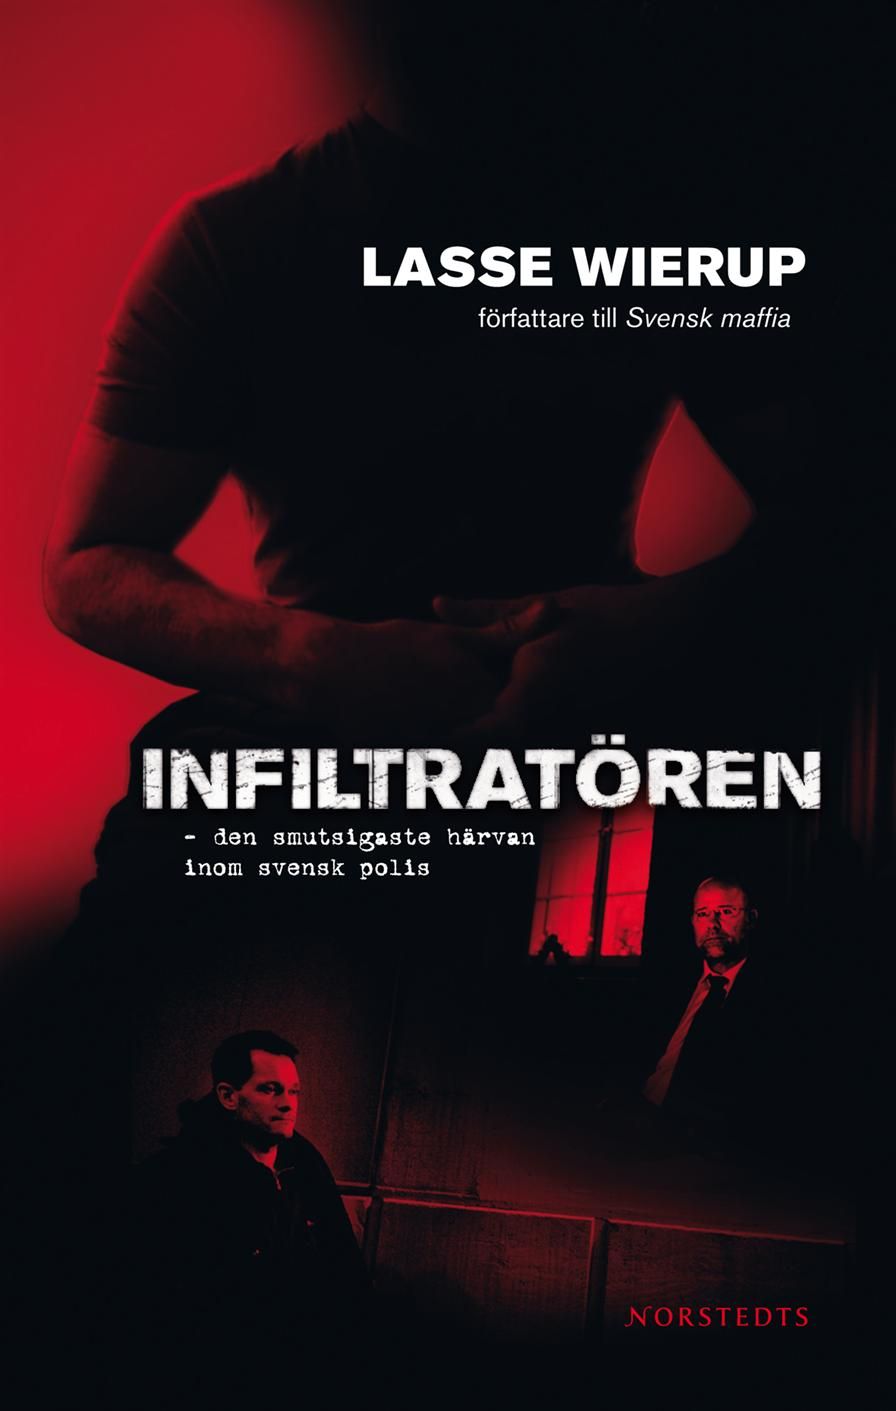 Infiltratören, eBook by Lasse Wierup